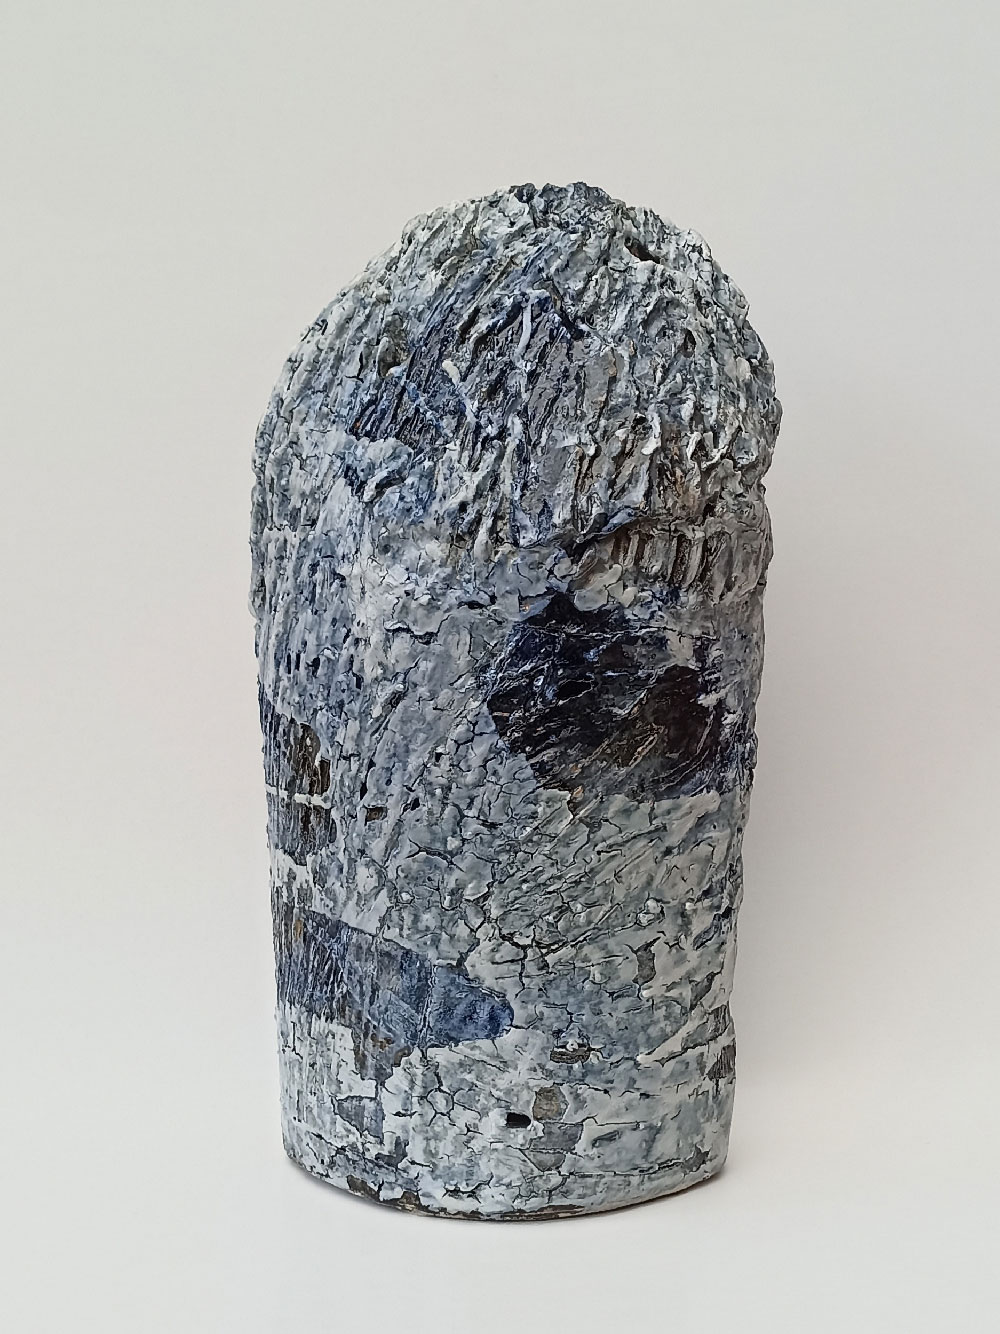 Sonja Delforce. "Céramique sculpturale", 2022 